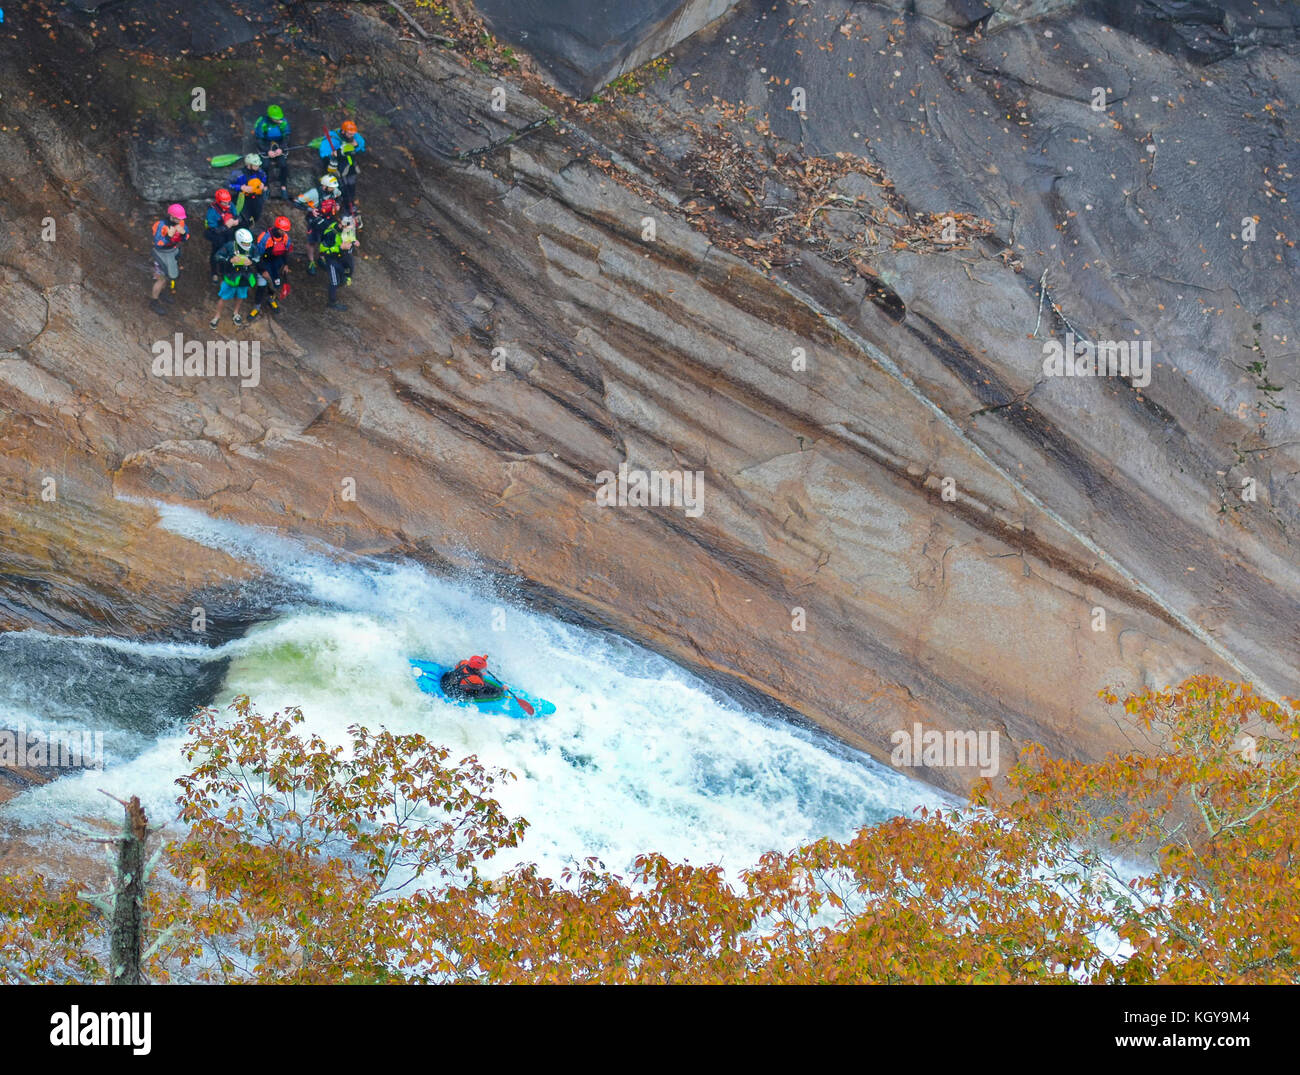 Gorges de tallulah rapides de kayak Banque D'Images